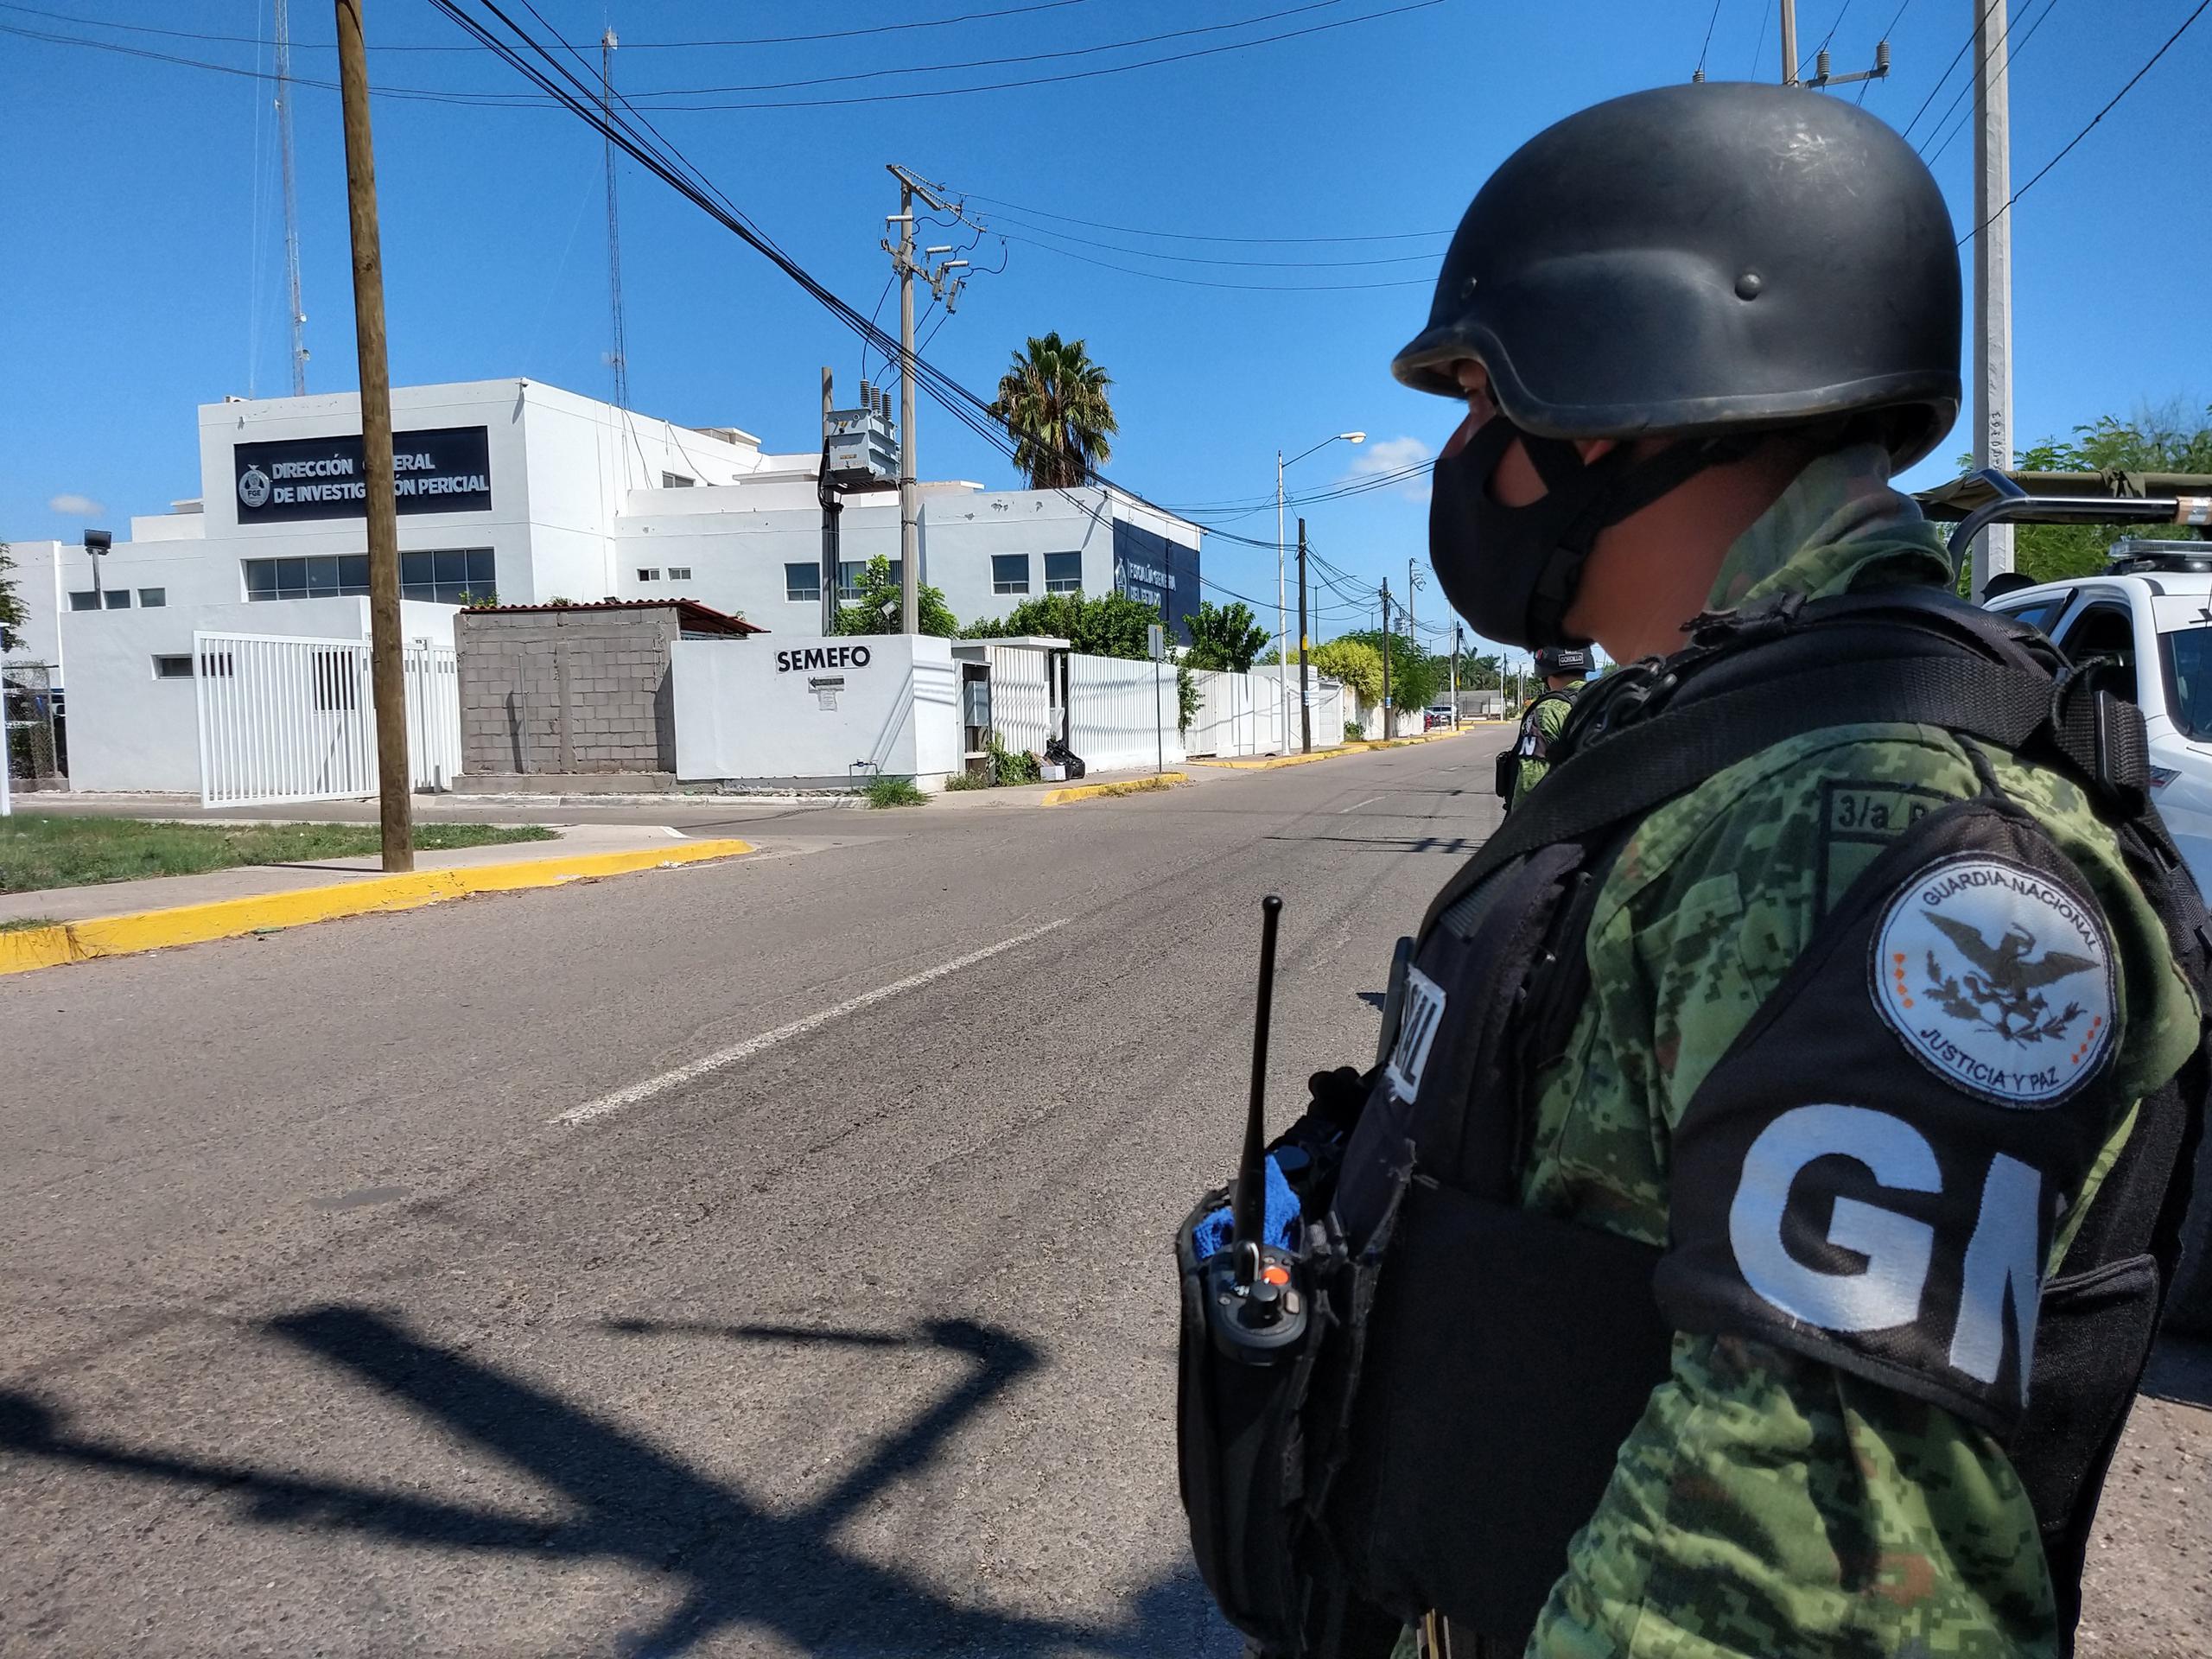 Las autoridades vigilan las instalaciones forenses en Sinaloa, a donde fue llevado el cuerpo.